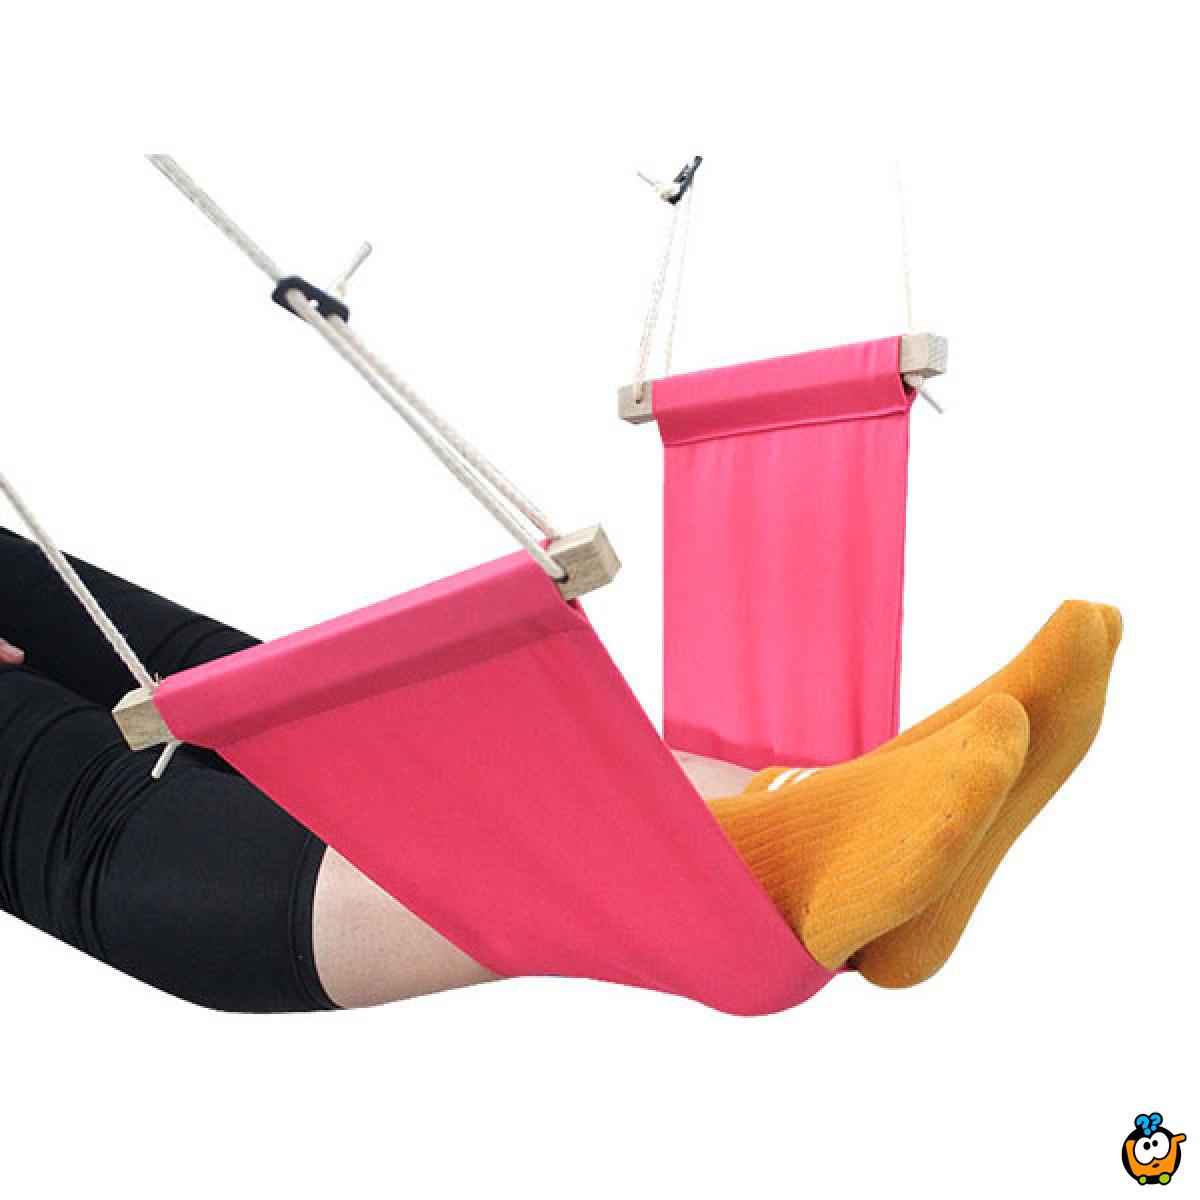 Foot hammock - Platneni držač za noge